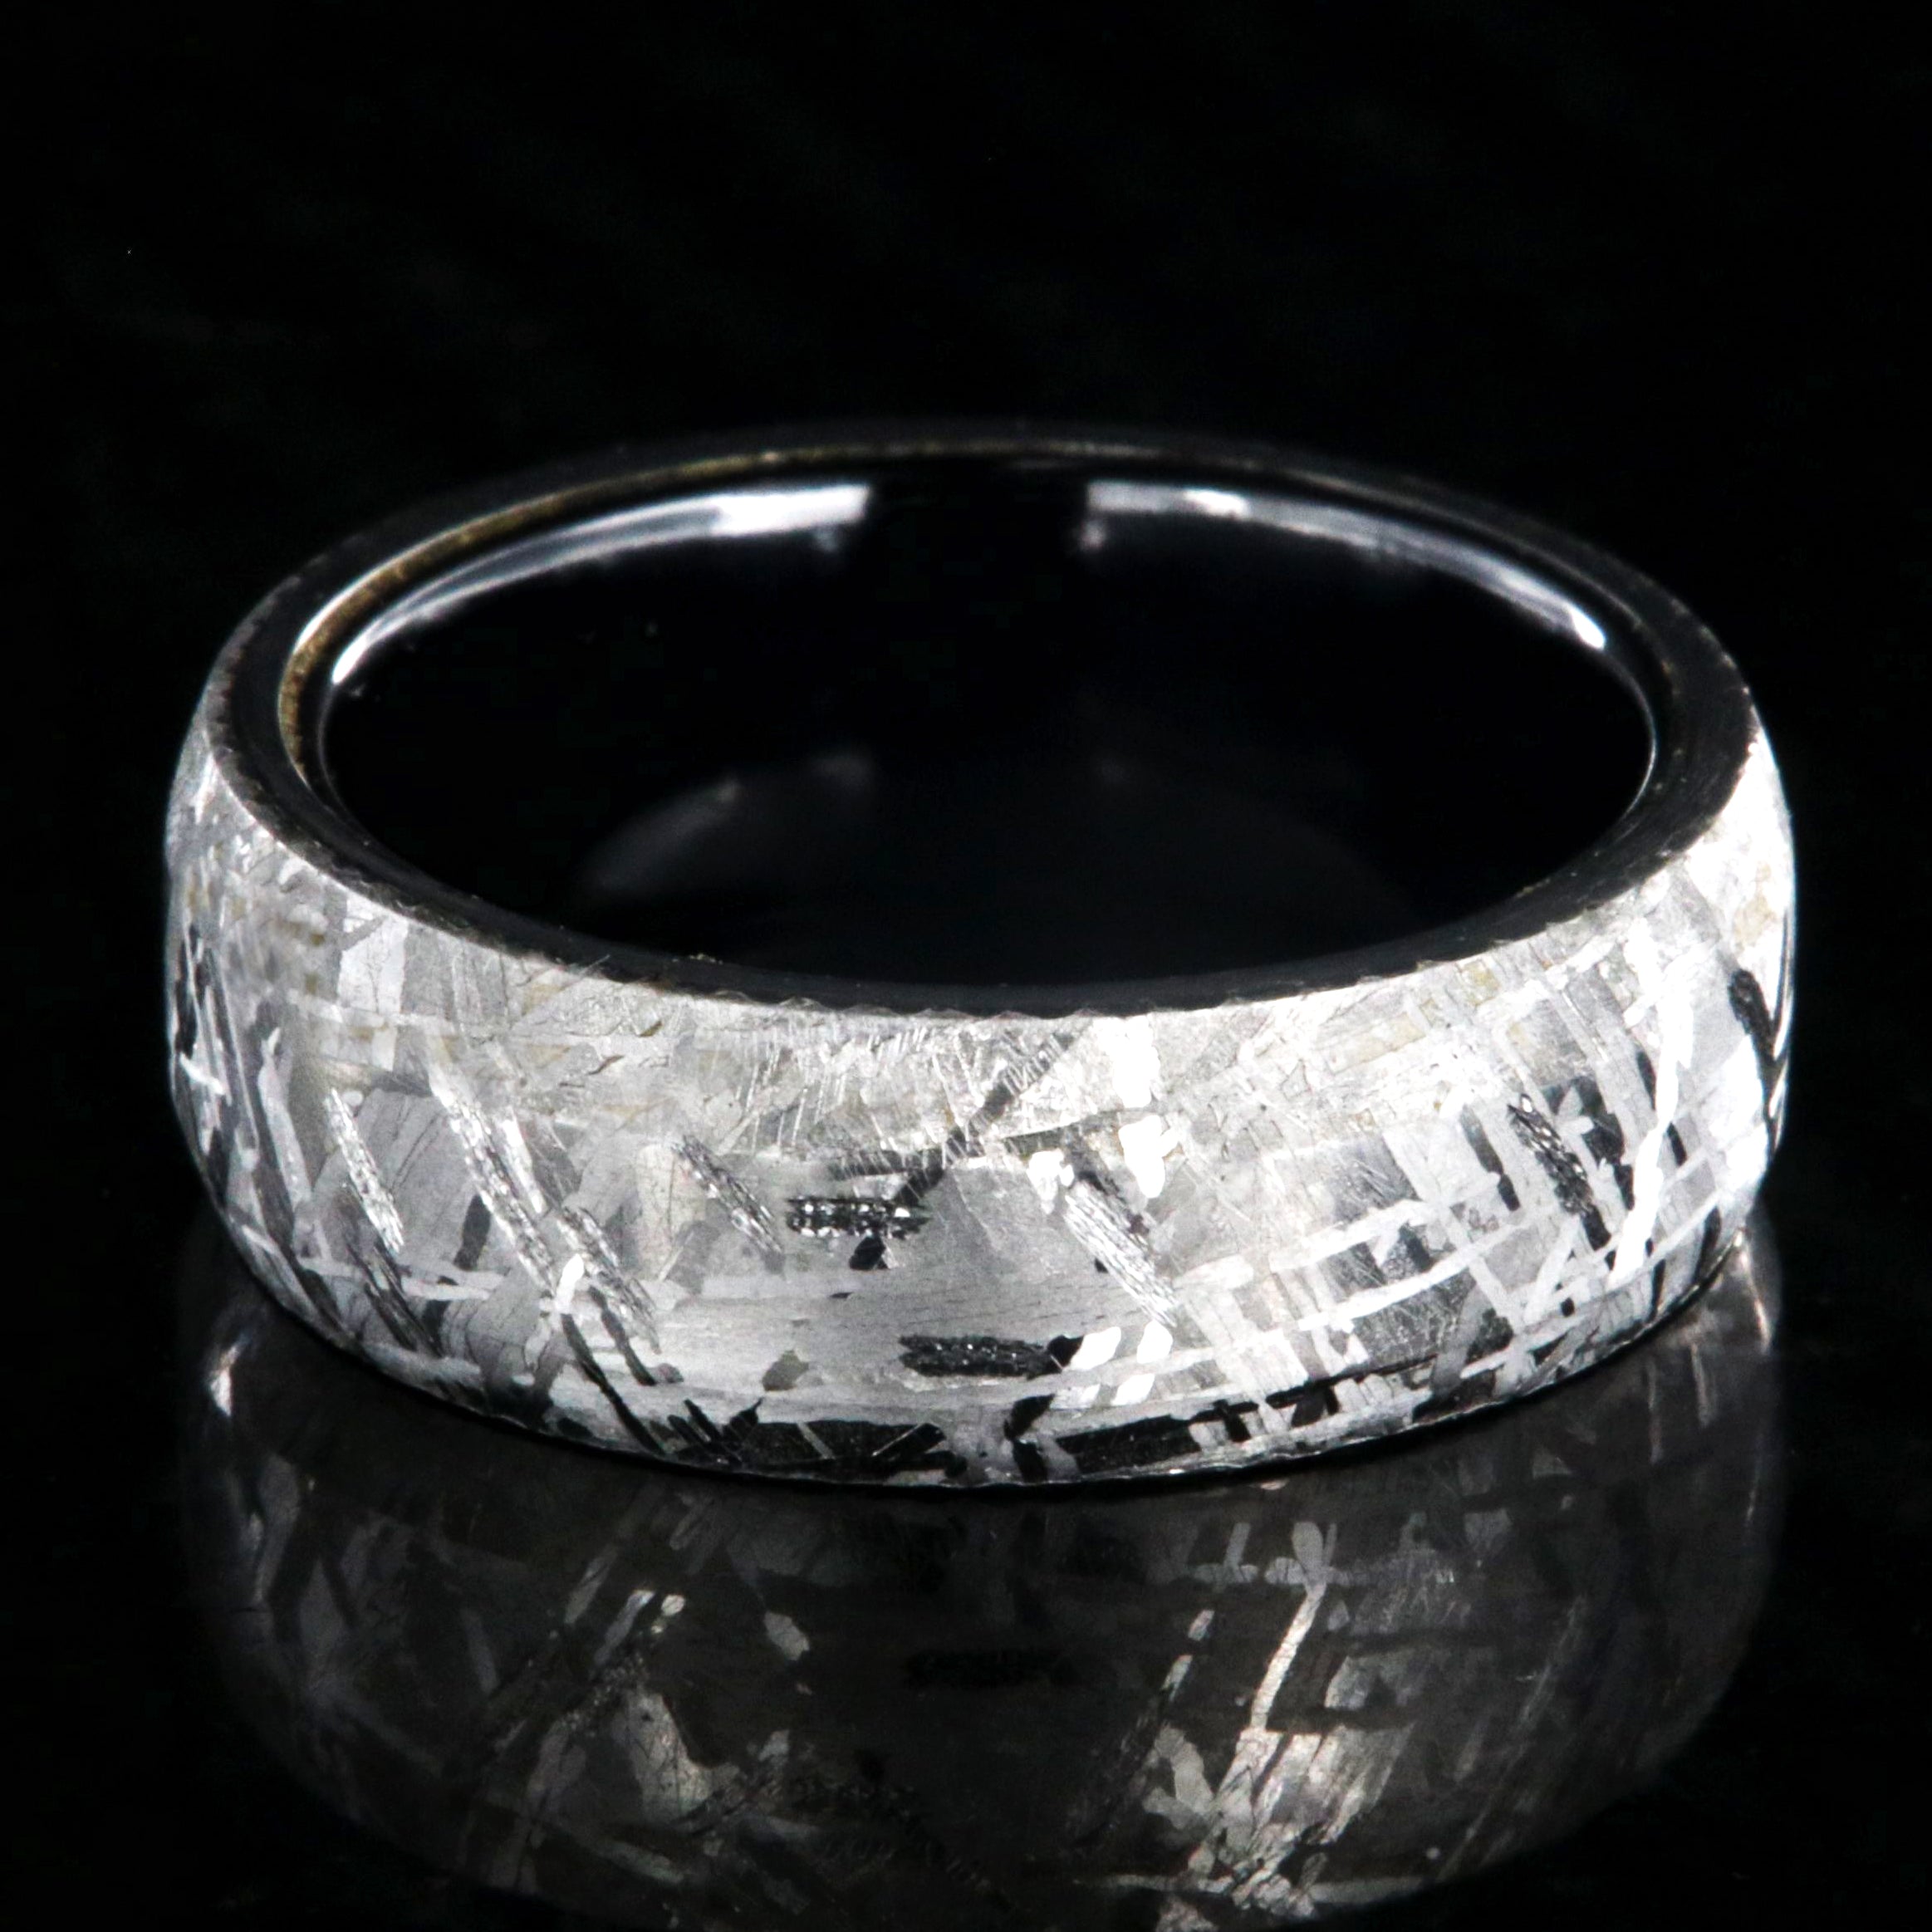 DarkStar - Meteorite Engagement Wedding Rings 3pc | Tungsten & Meteorite  His and Hers Wedding Rings Sets